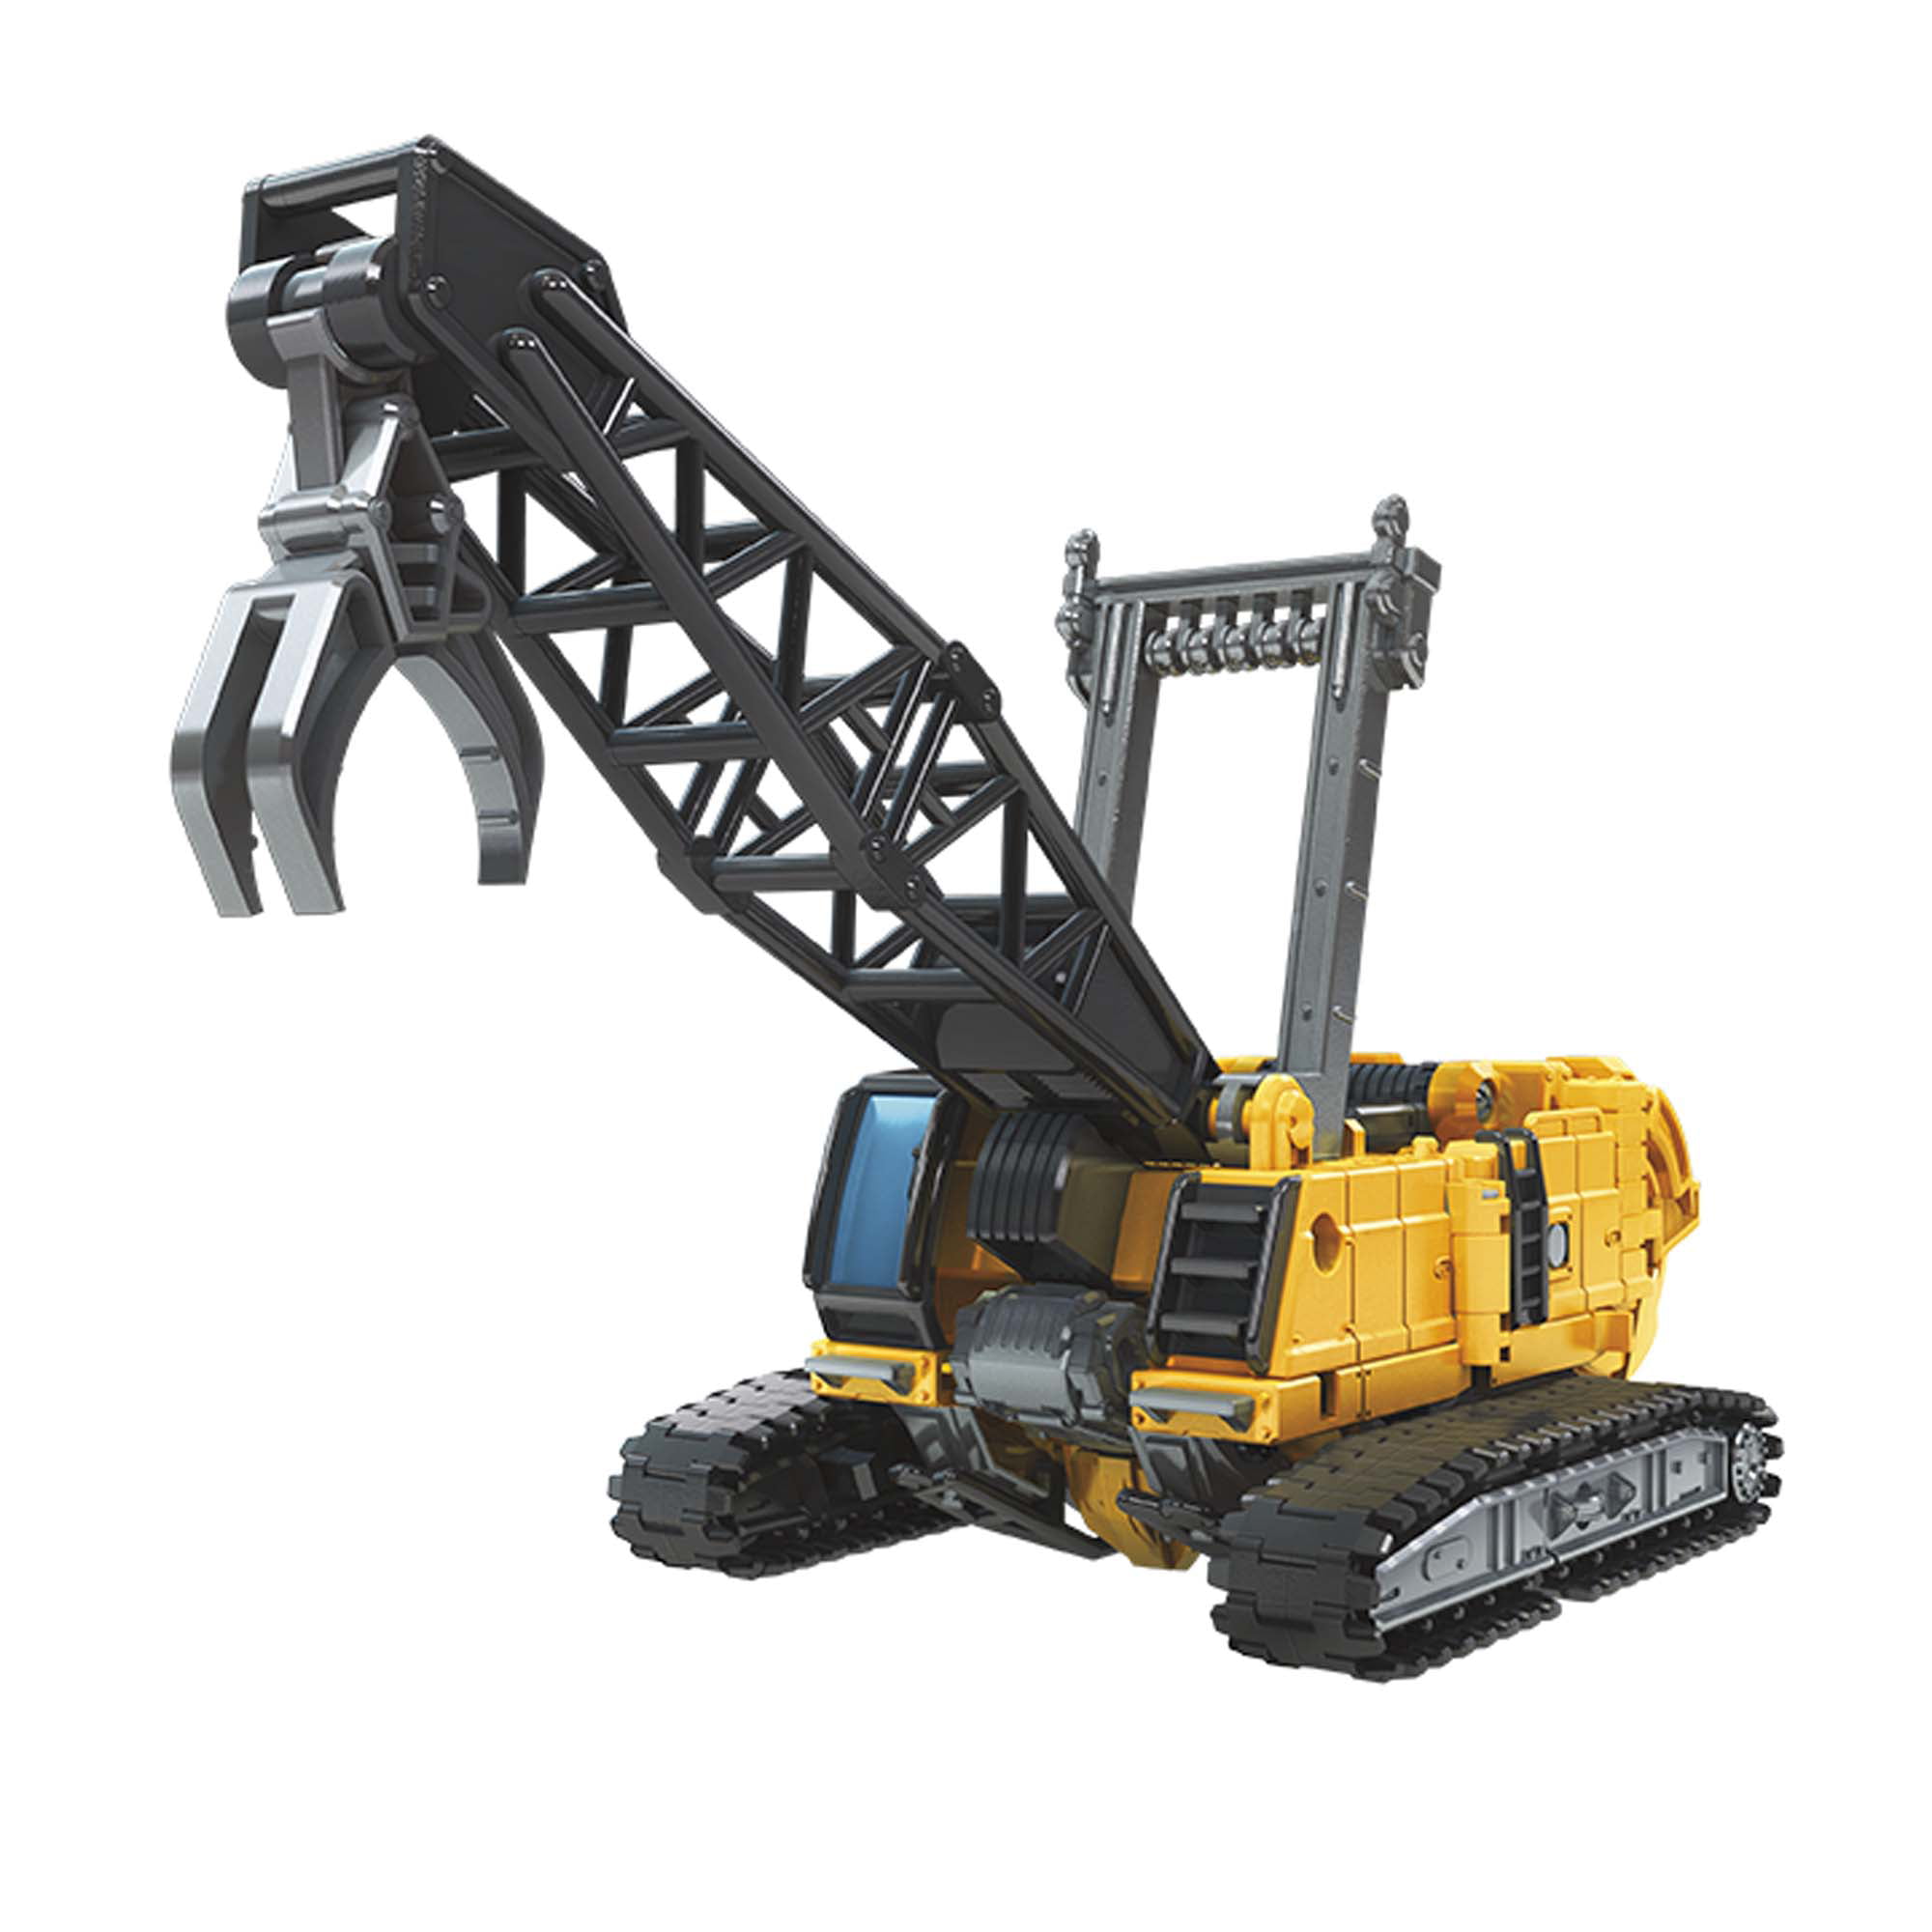 Transformers Studio Series 47 Constructicon Hightower Deluxe Class Robot Figures 